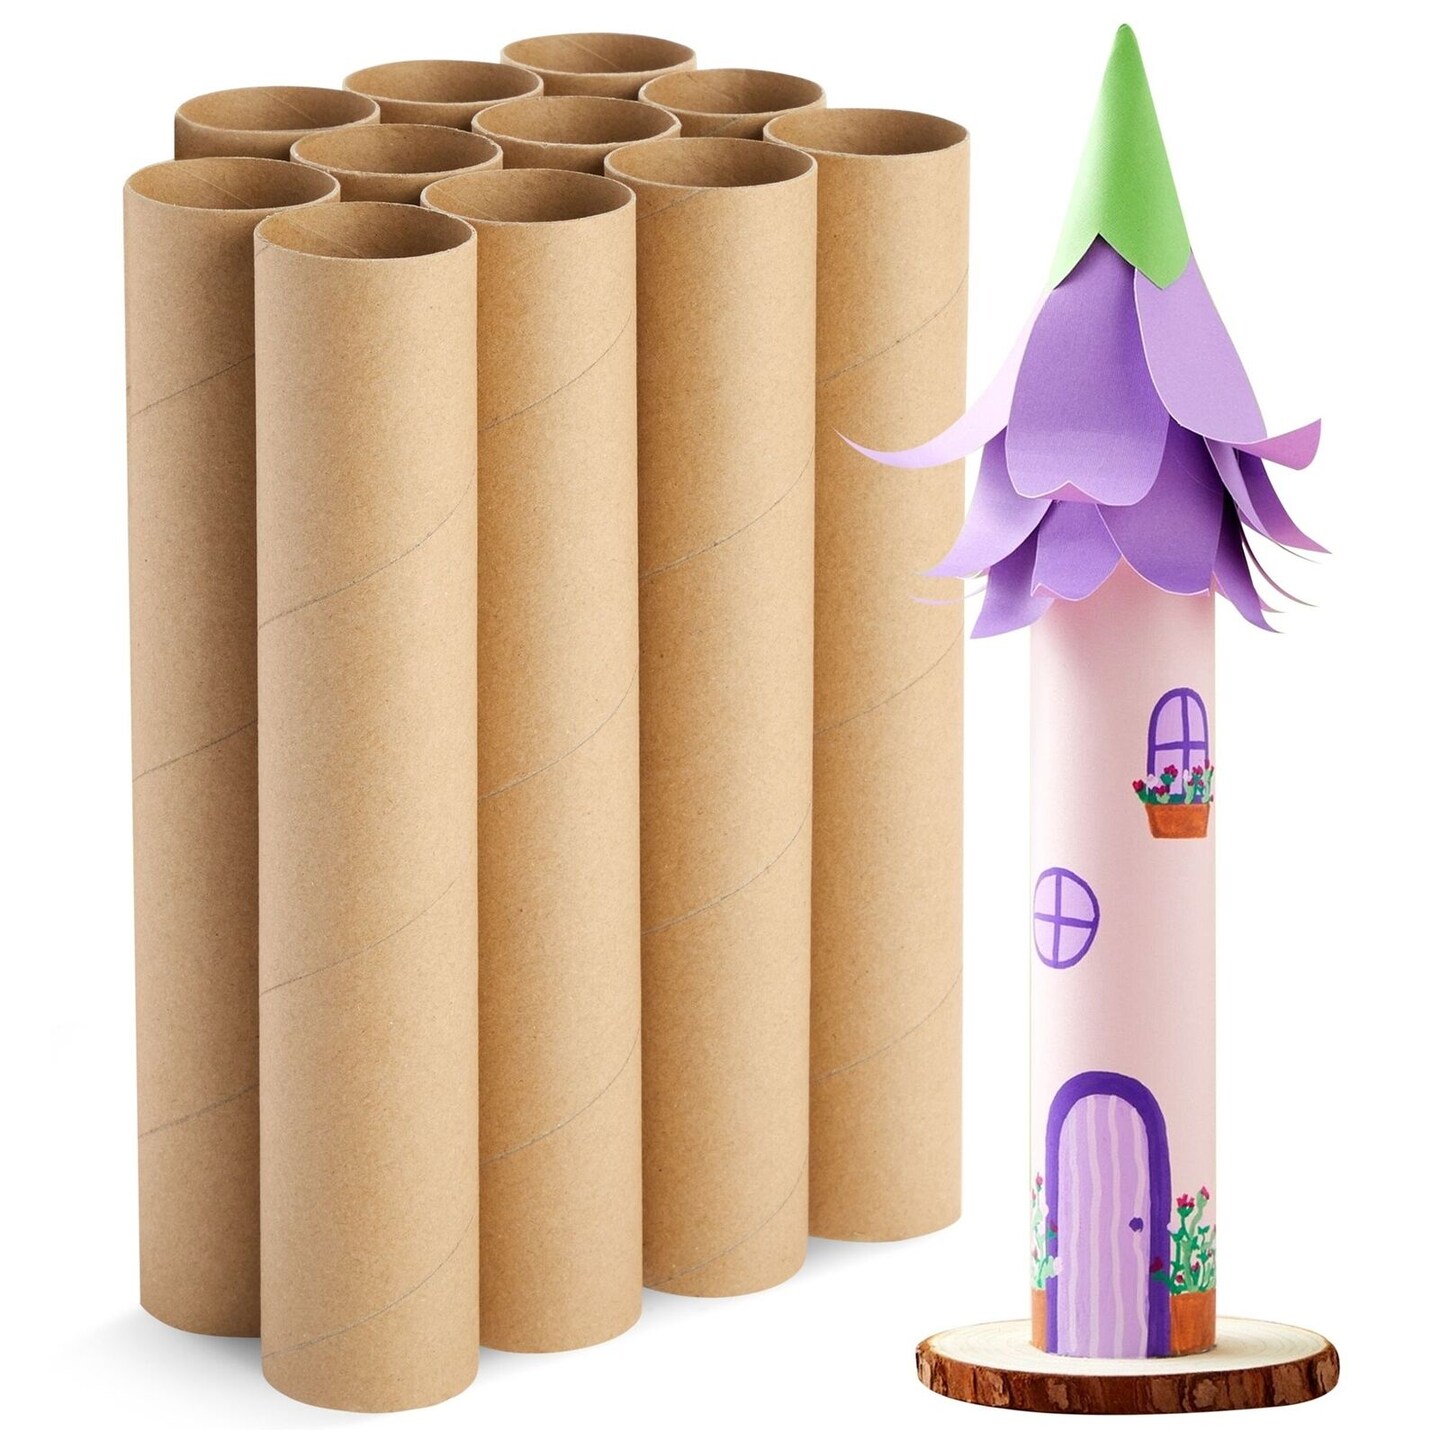 12 Pack Cardboard Tubes for Crafts